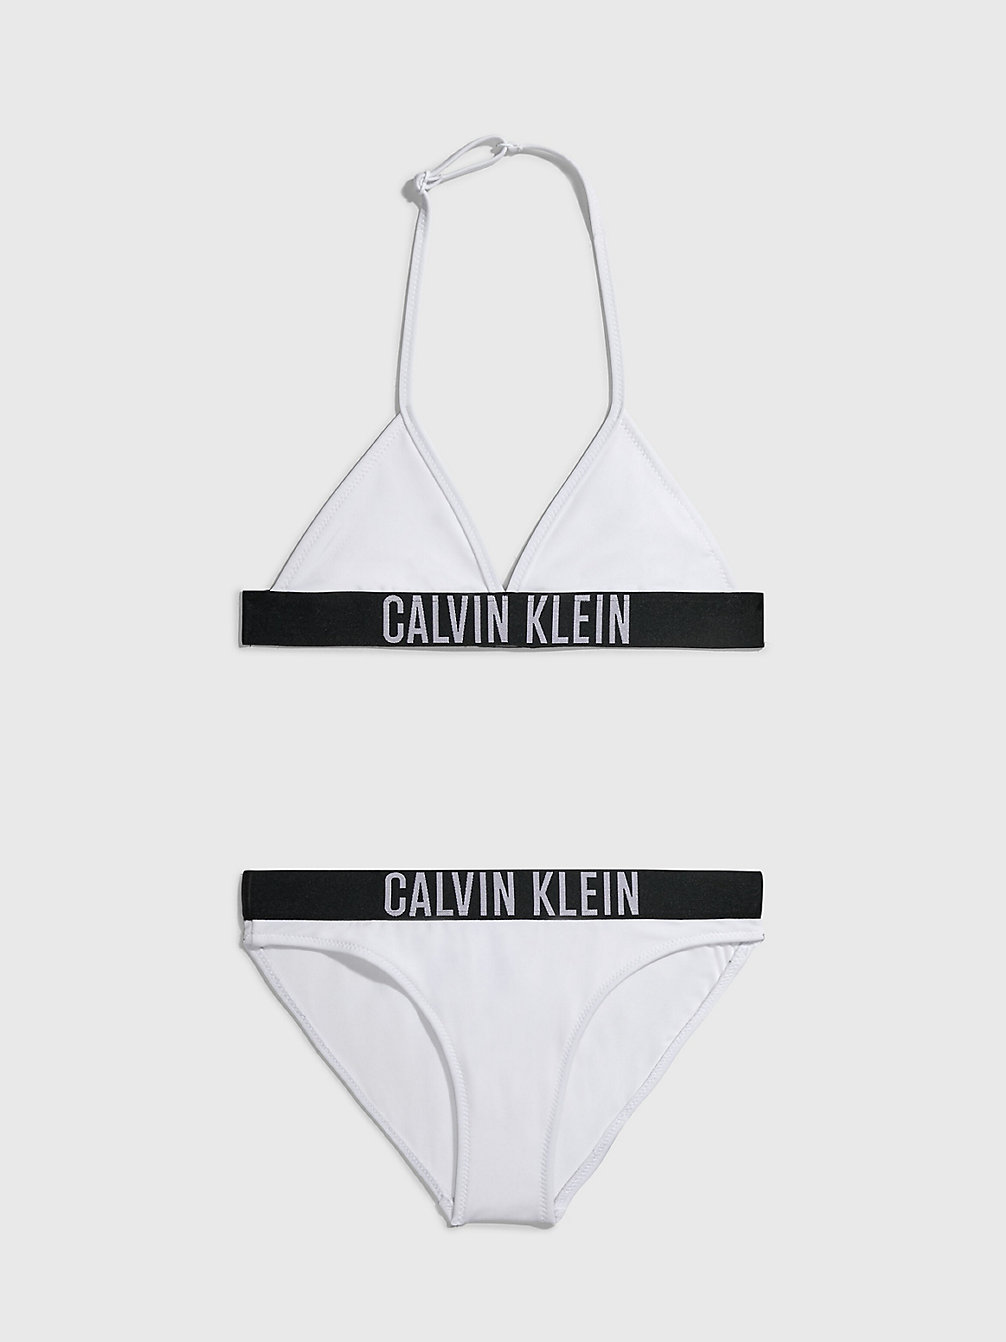 PVH CLASSIC WHITE > Dziewczęcy Dwuczęściowy Strój Kąpielowy Z Trójkątnym Bikini - Intense Power > undefined Dziewczynki - Calvin Klein